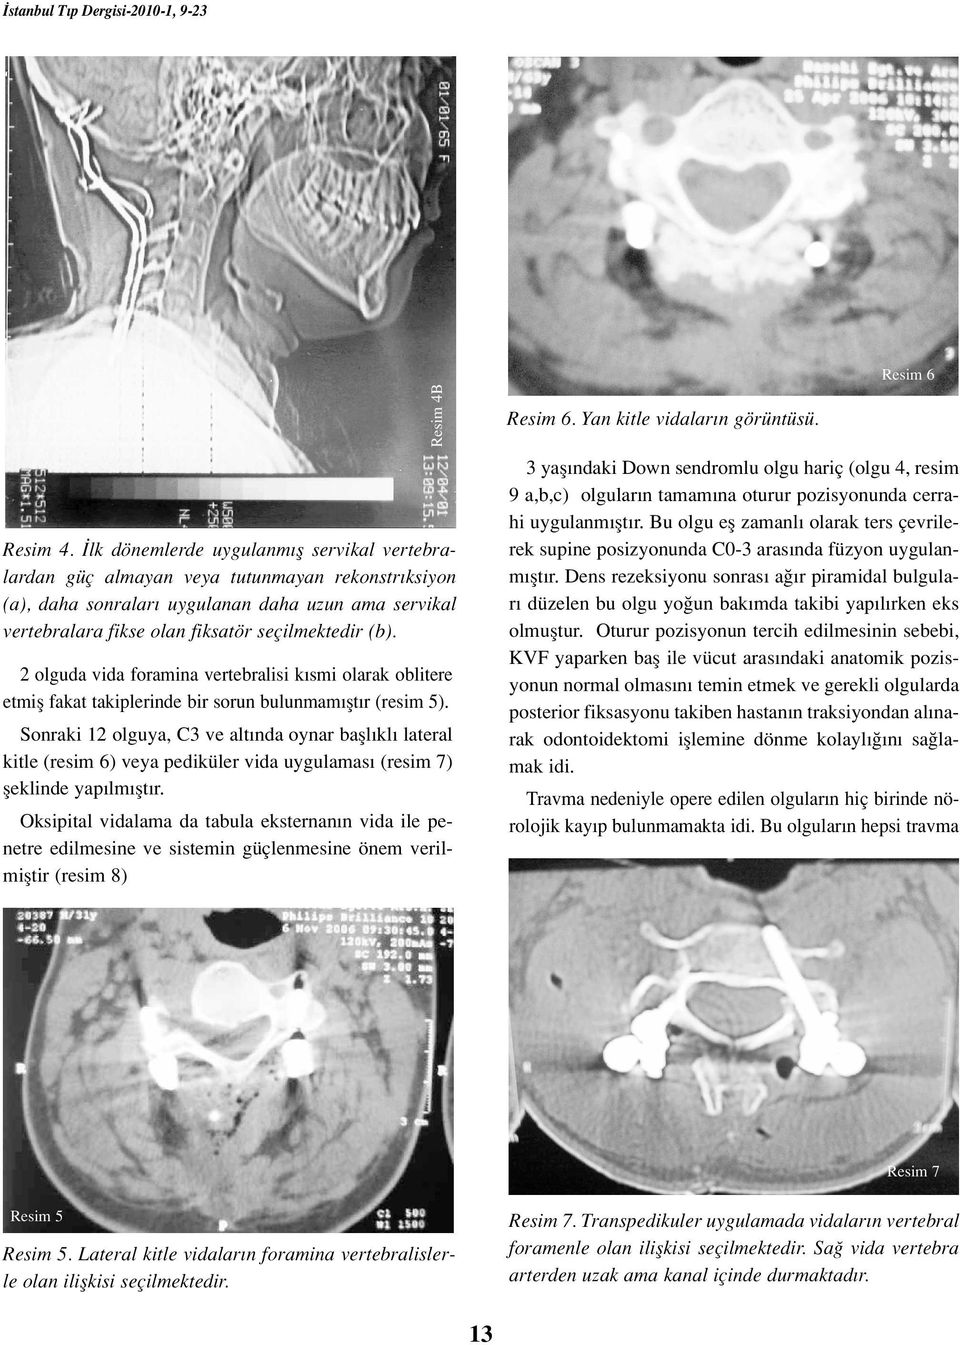 2 olguda vida foramina vertebralisi k smi olarak oblitere etmifl fakat takiplerinde bir sorun bulunmam flt r (resim 5).